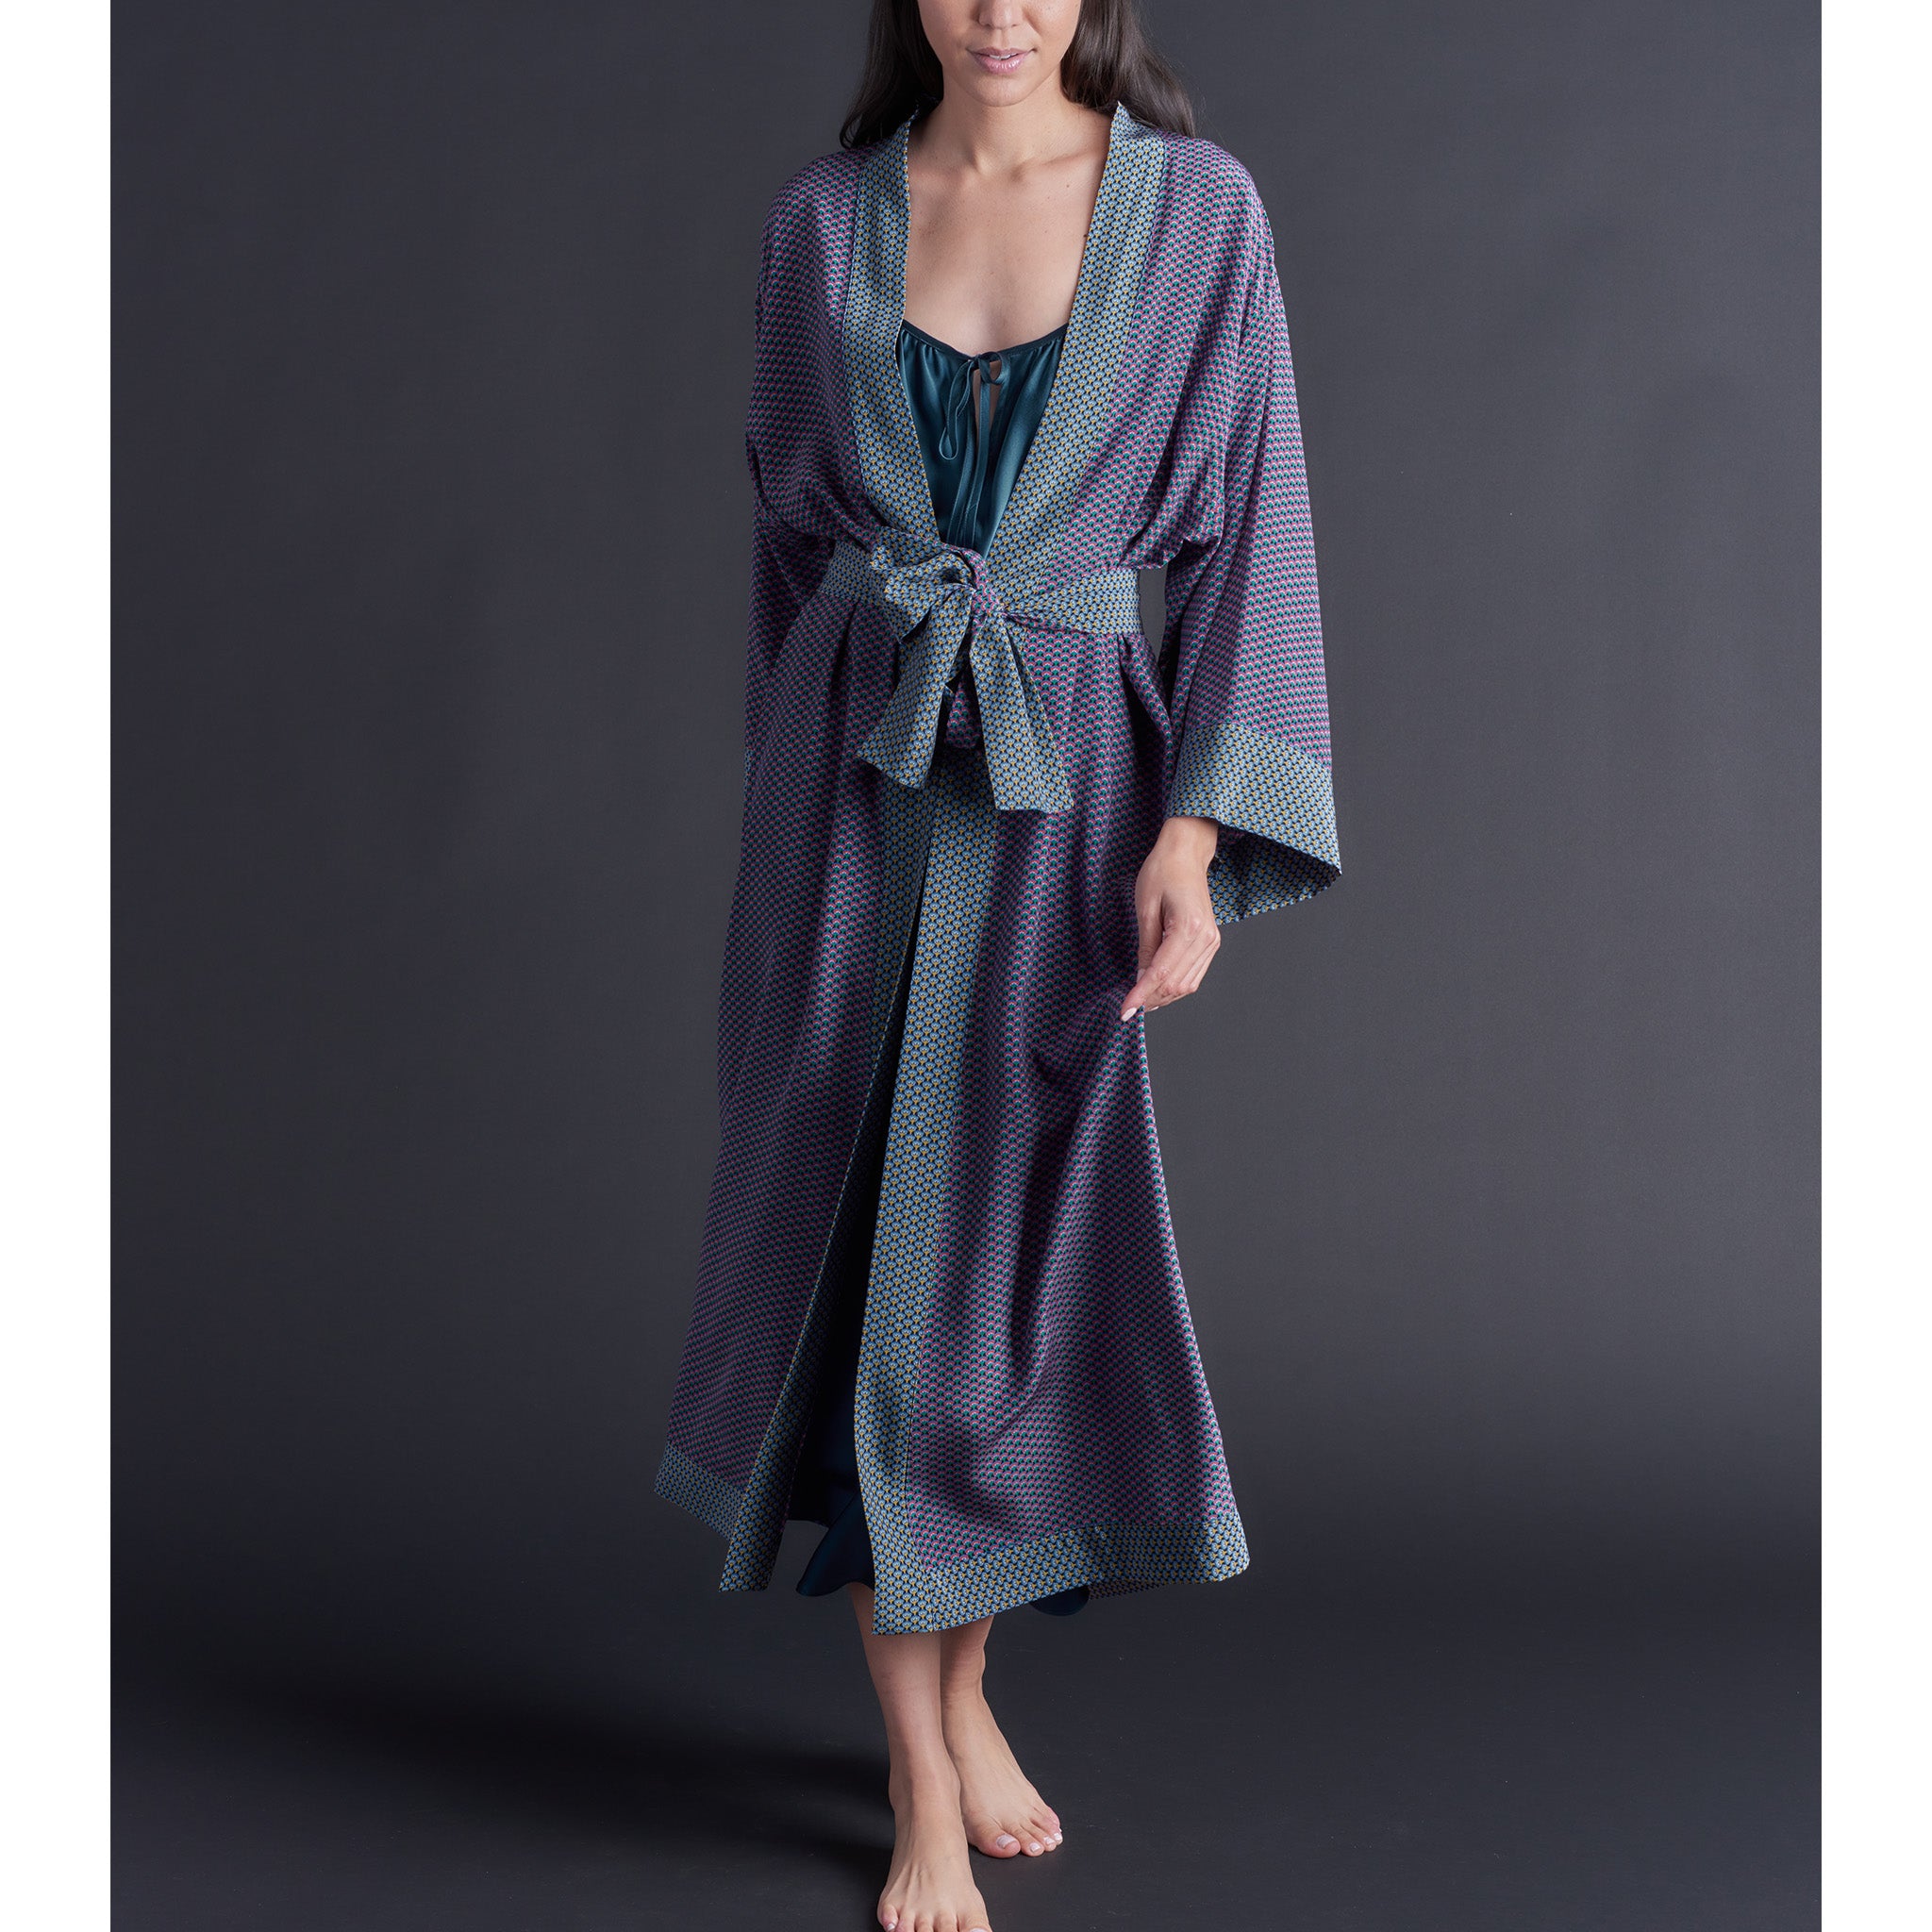 Asteria Kimono Robe in Woodstock Liberty of London Print Silk Crepe De Chine